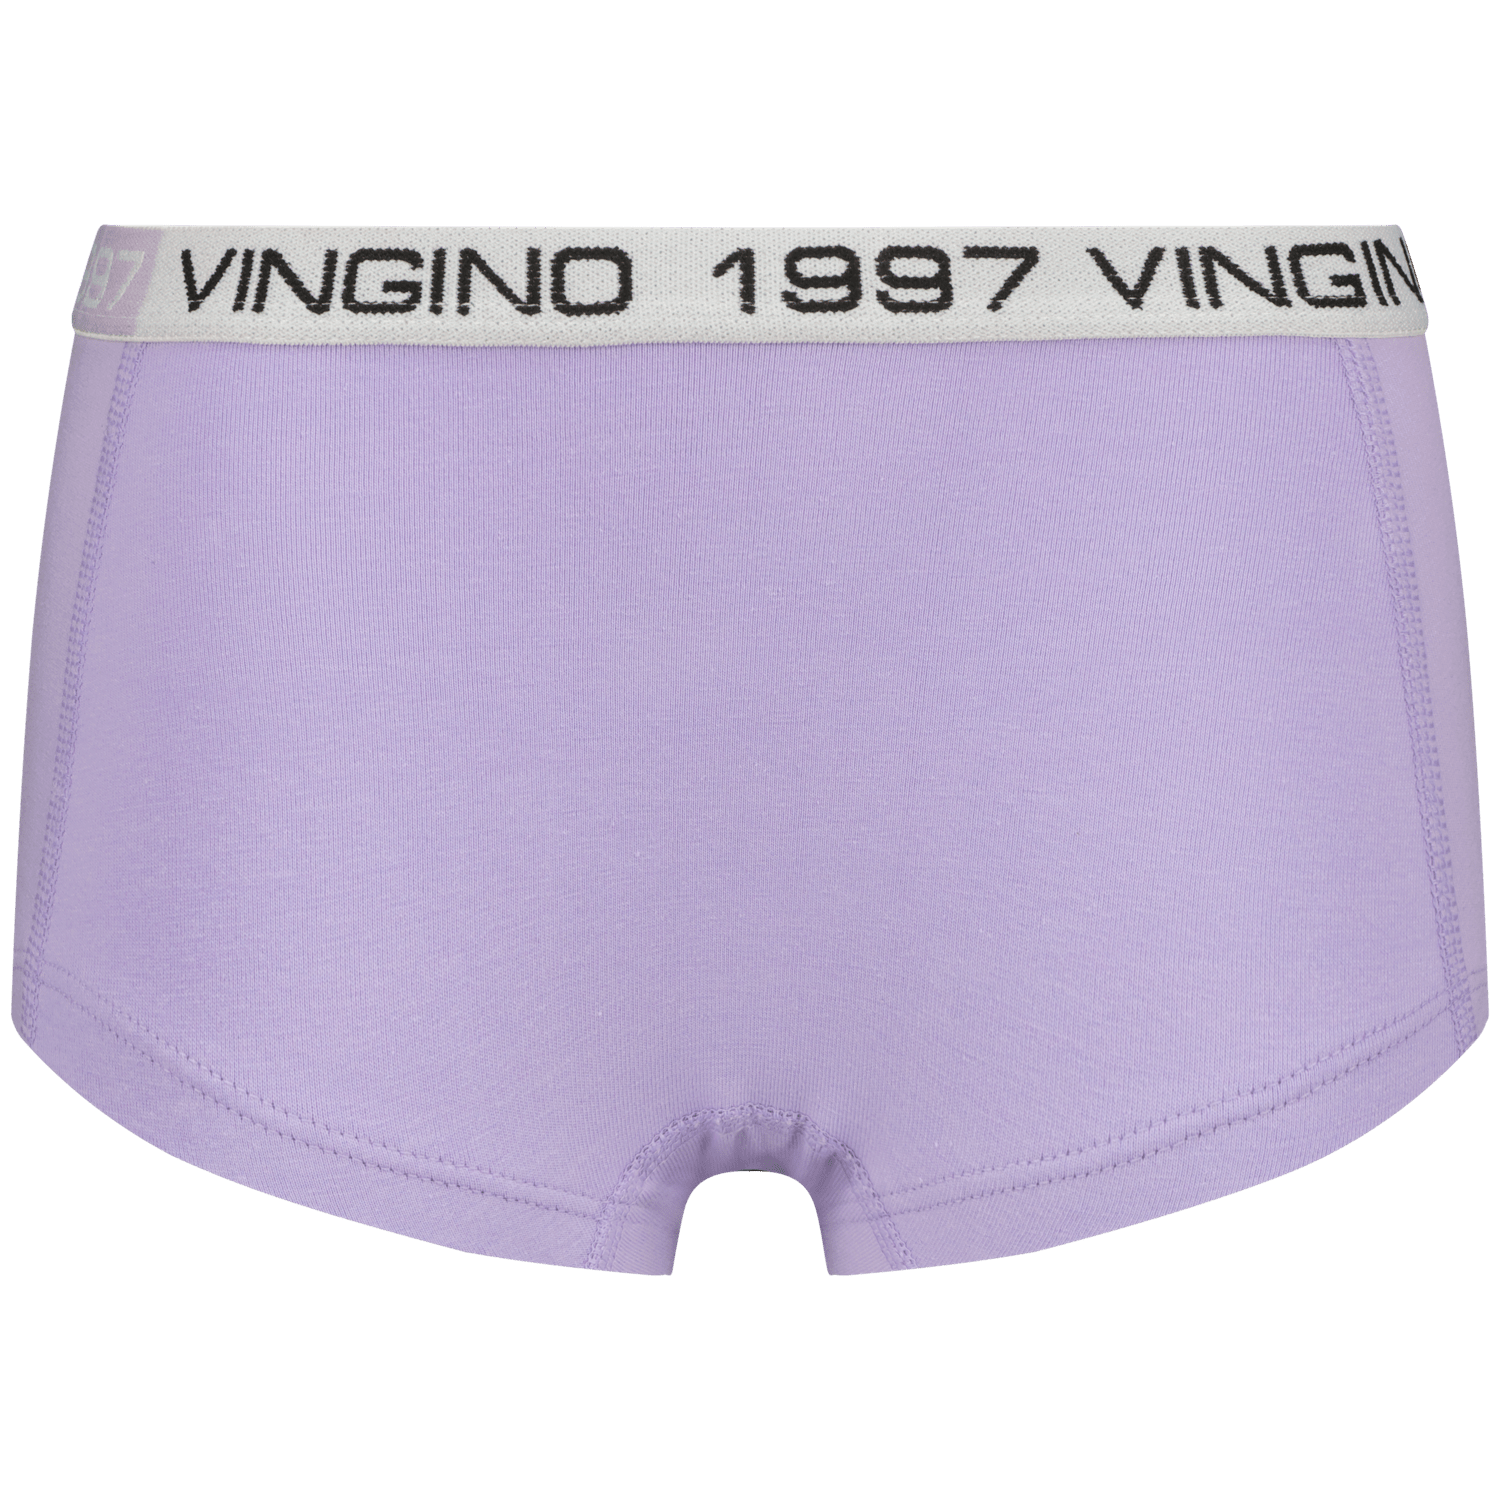 VINGINO Hipster G-so24-8 5 pack